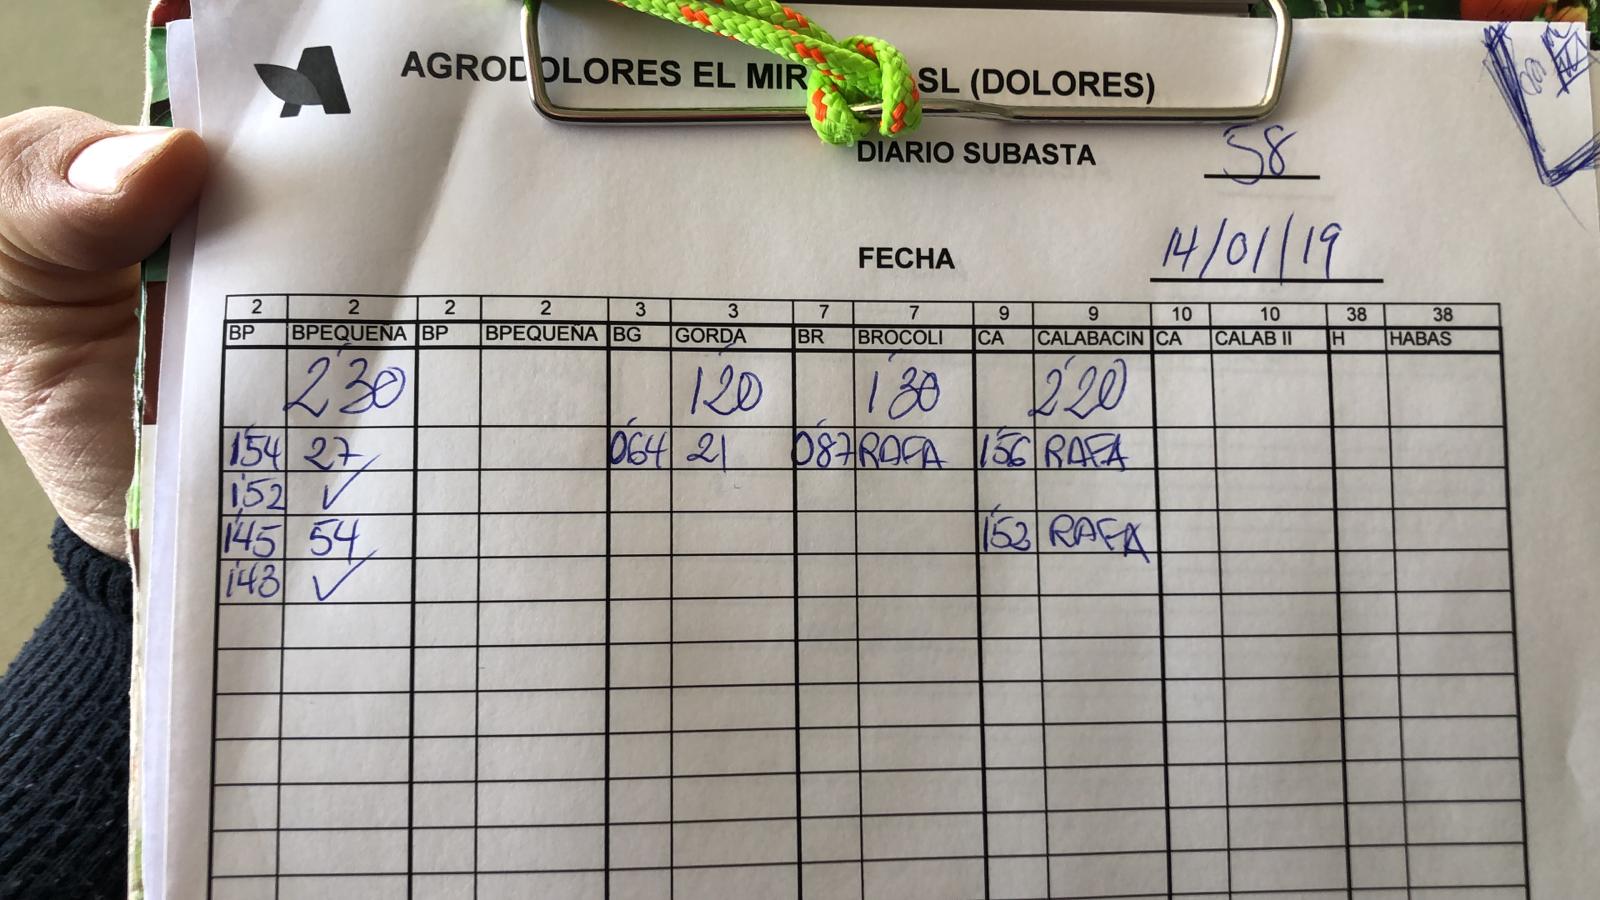 Subasta hortofrutícola Agrodolores Dolores 14 de Enero 2019